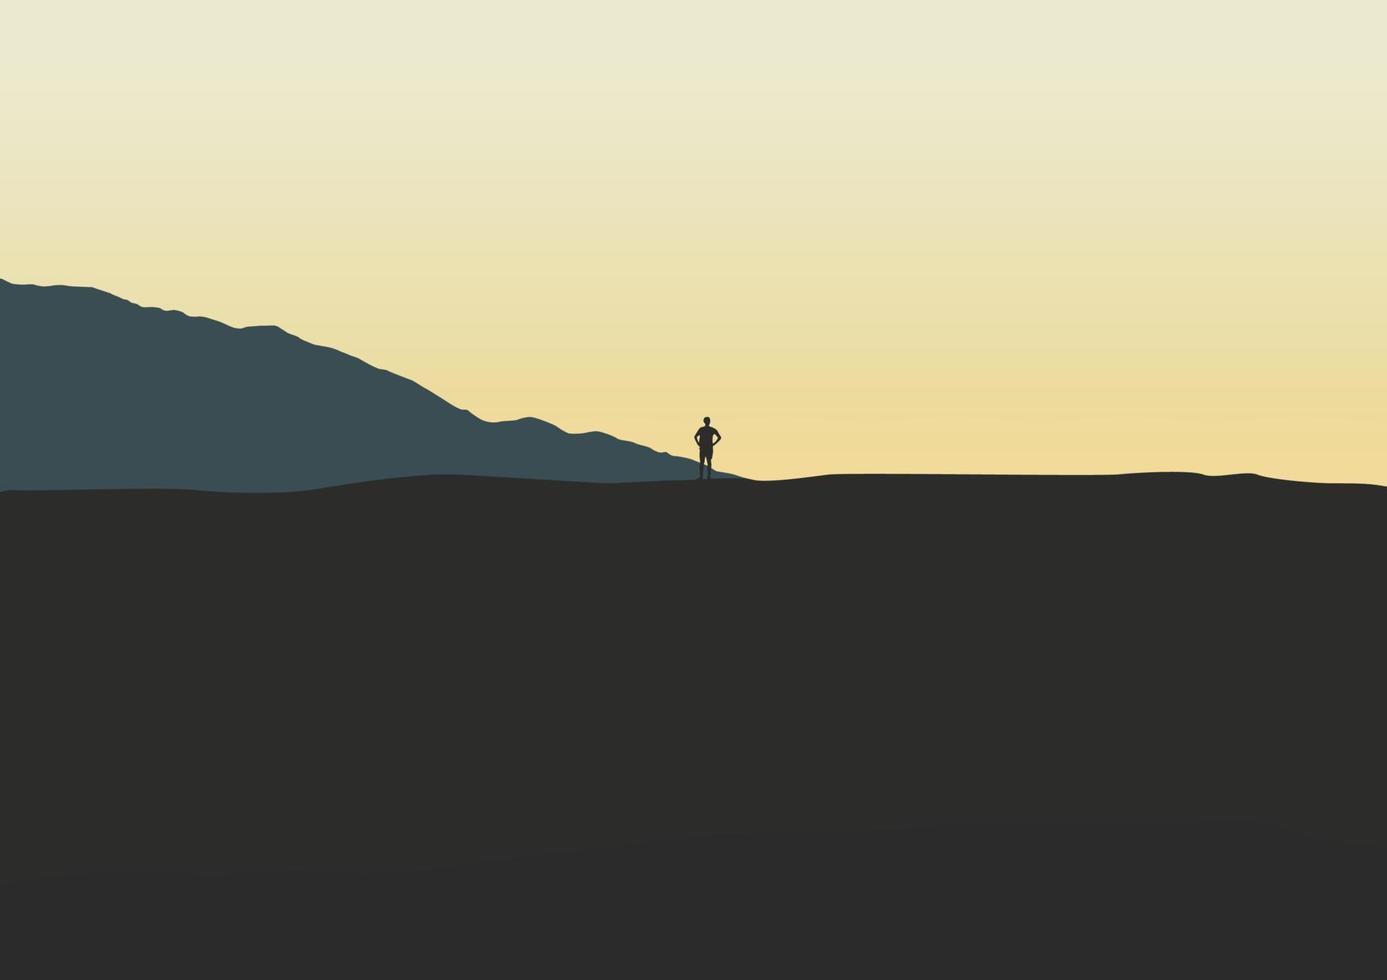 silueta de un persona en el montañas en el mañana, vector ilustración.